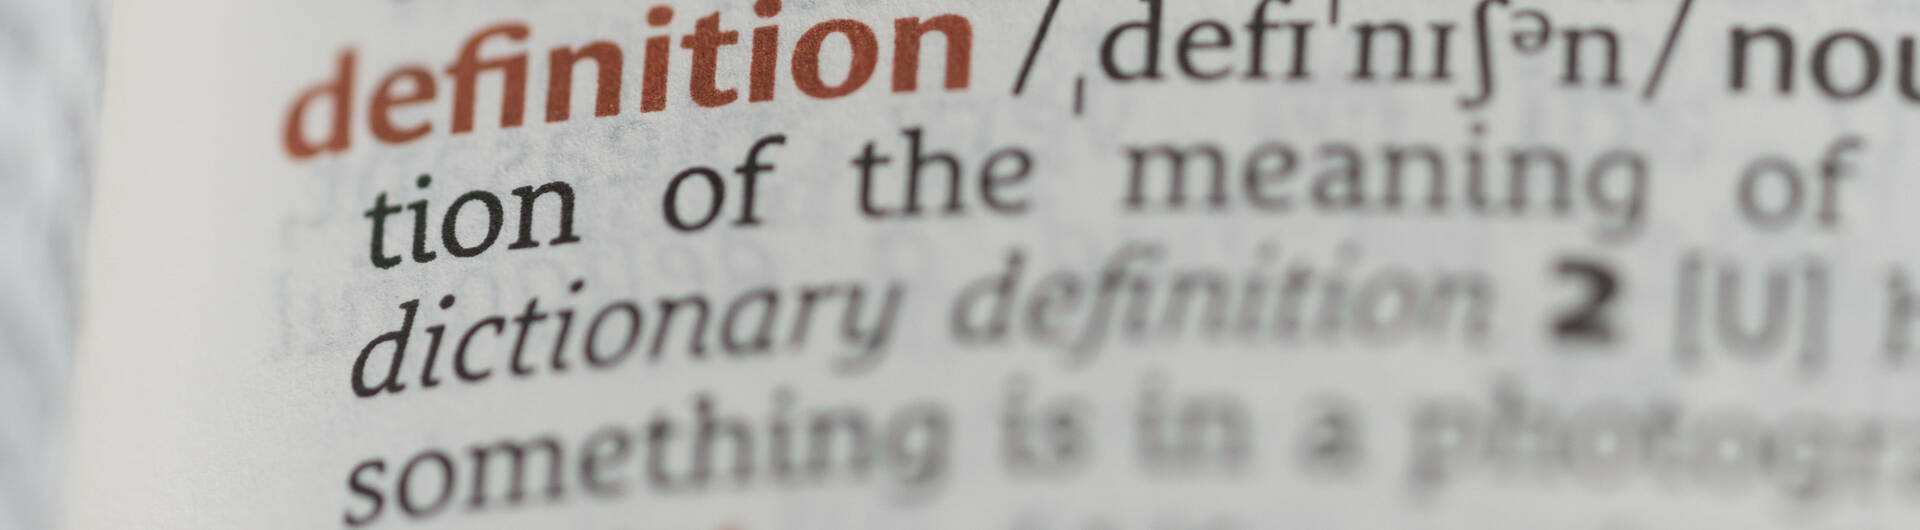 Wörterbuch mit dem Eintrag "Definition"